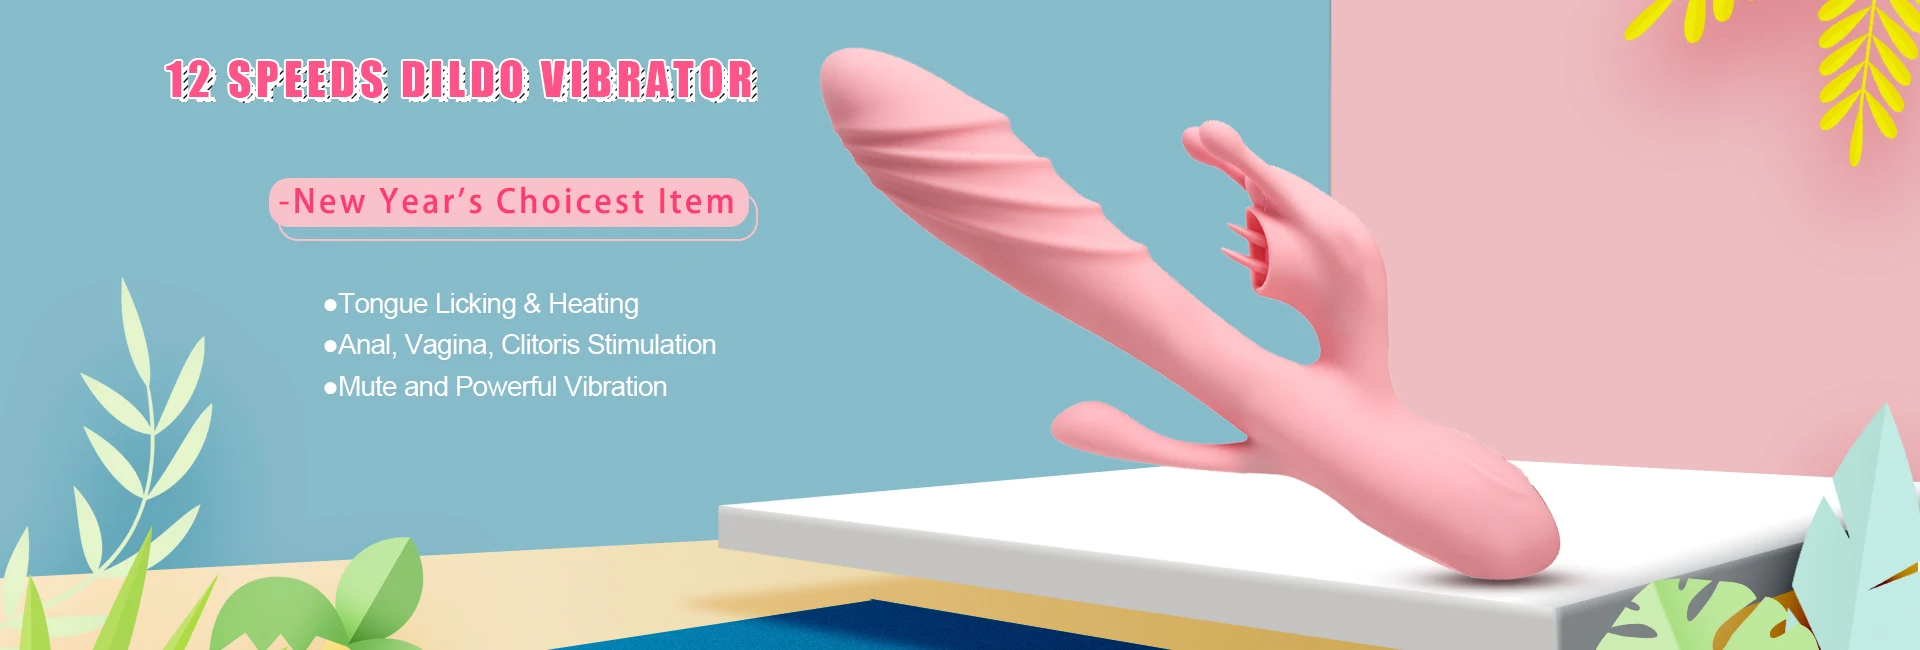 Wholesale Dual Motors Anal Vibrators Strapon Dildo Vibrator G-spot Massager Clitoris Vagina Stimulator Sex Toys for Women Lesbian S1fb4dc604e974803910b8a97c7c2f440Z